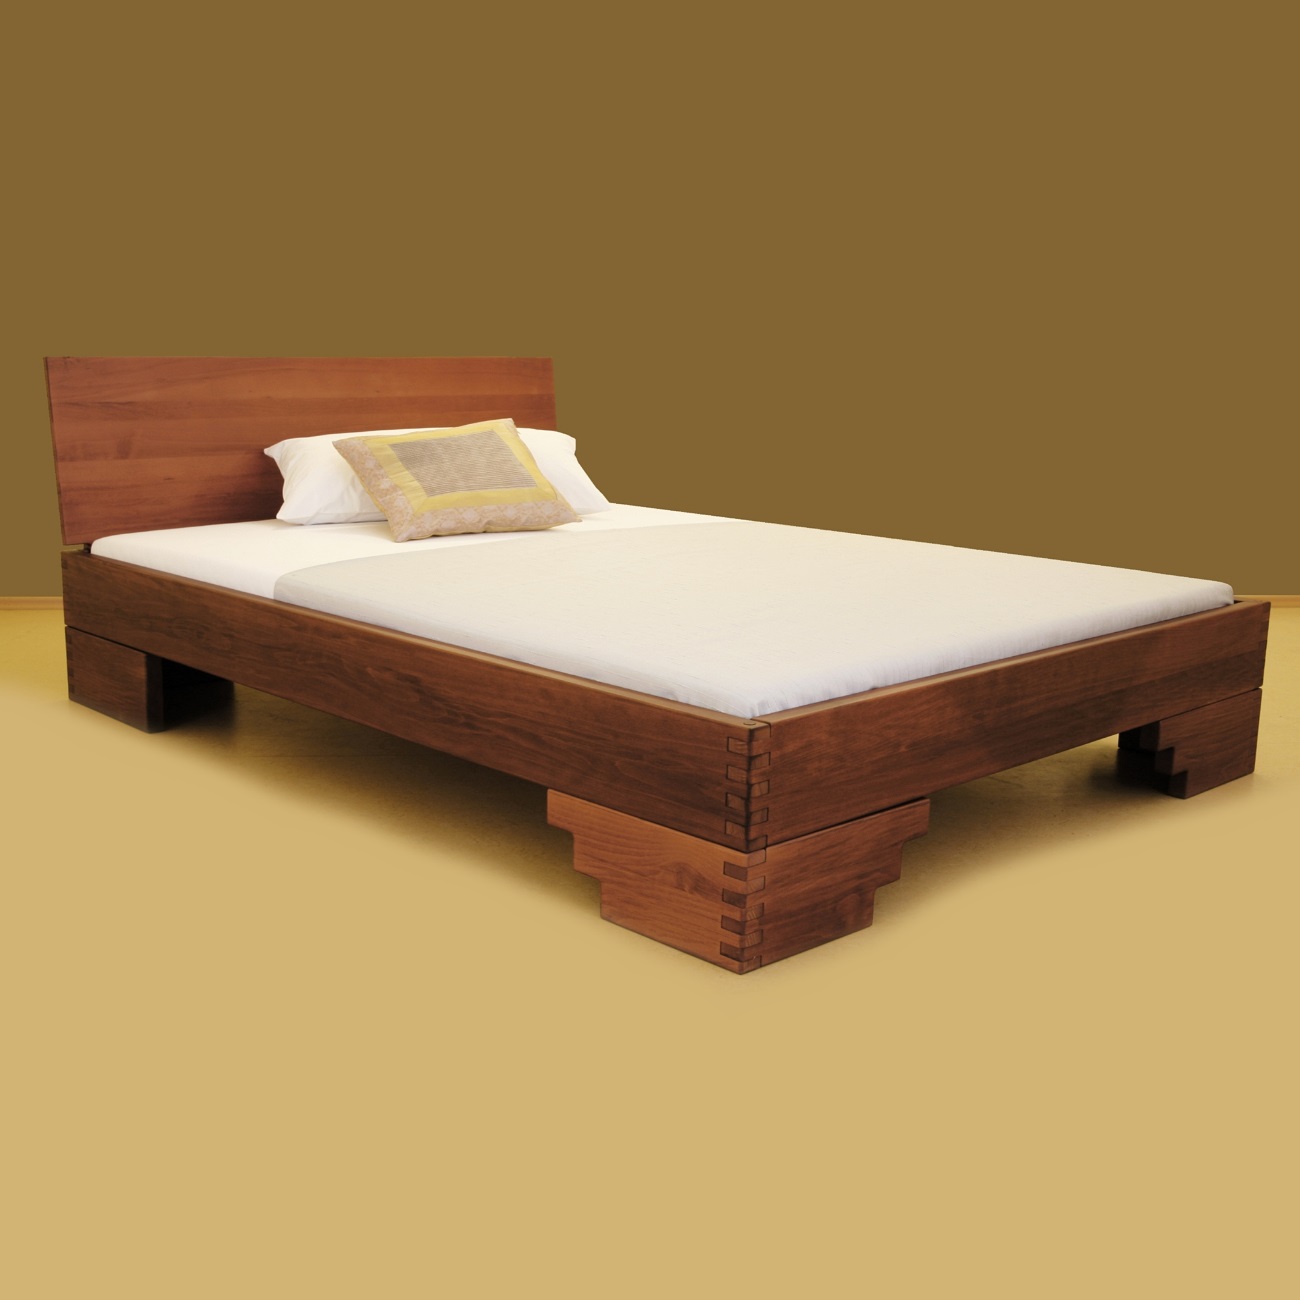 Schwerlastbett aus Massivholz | PEFC zertifiziertes Holz | Modell Ramsis